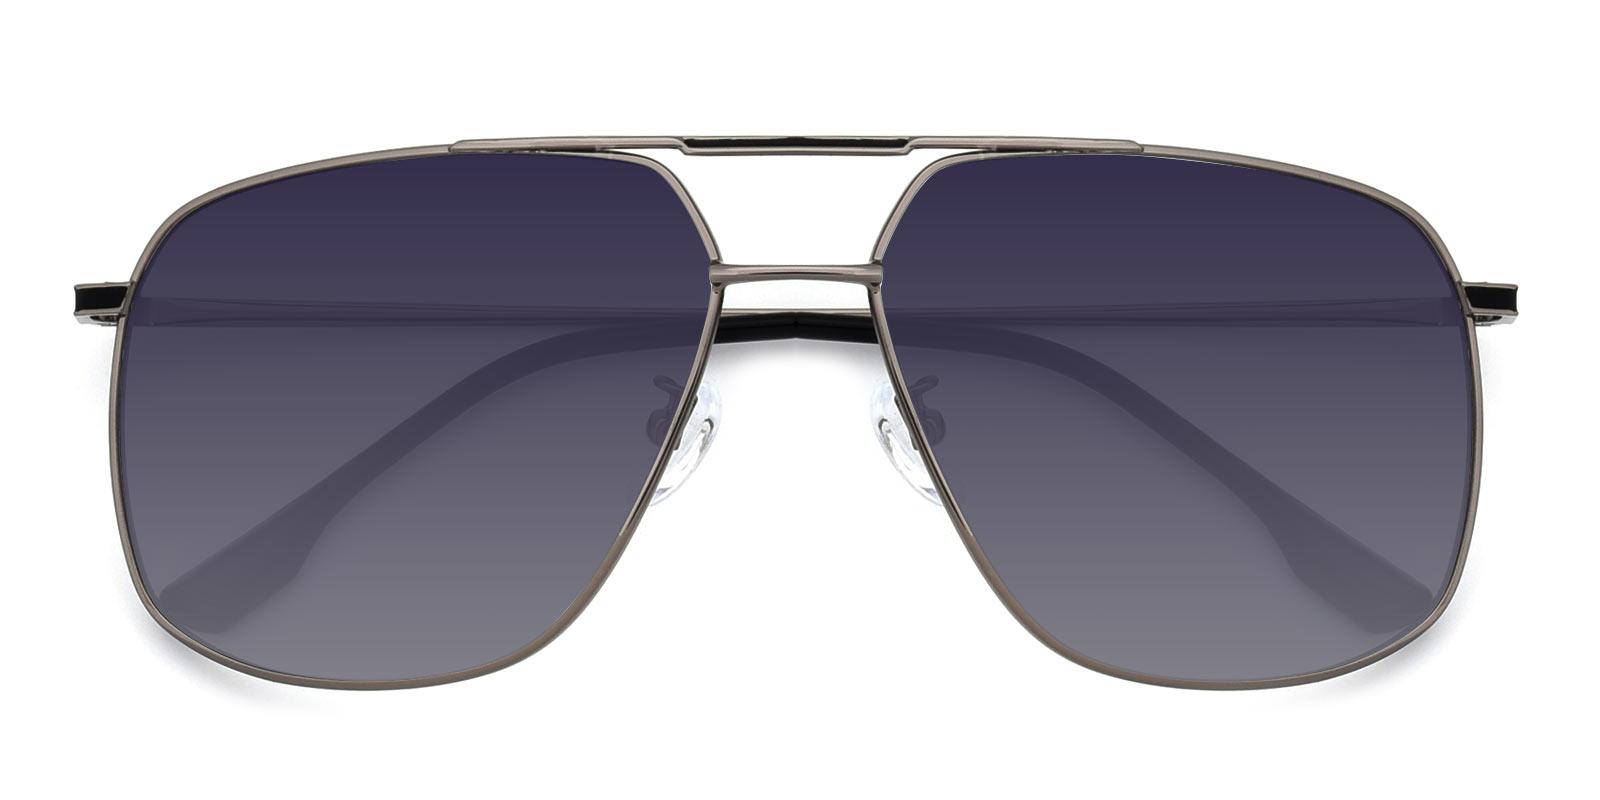 Apollo Aviator Sunglasses in Black - Sllac